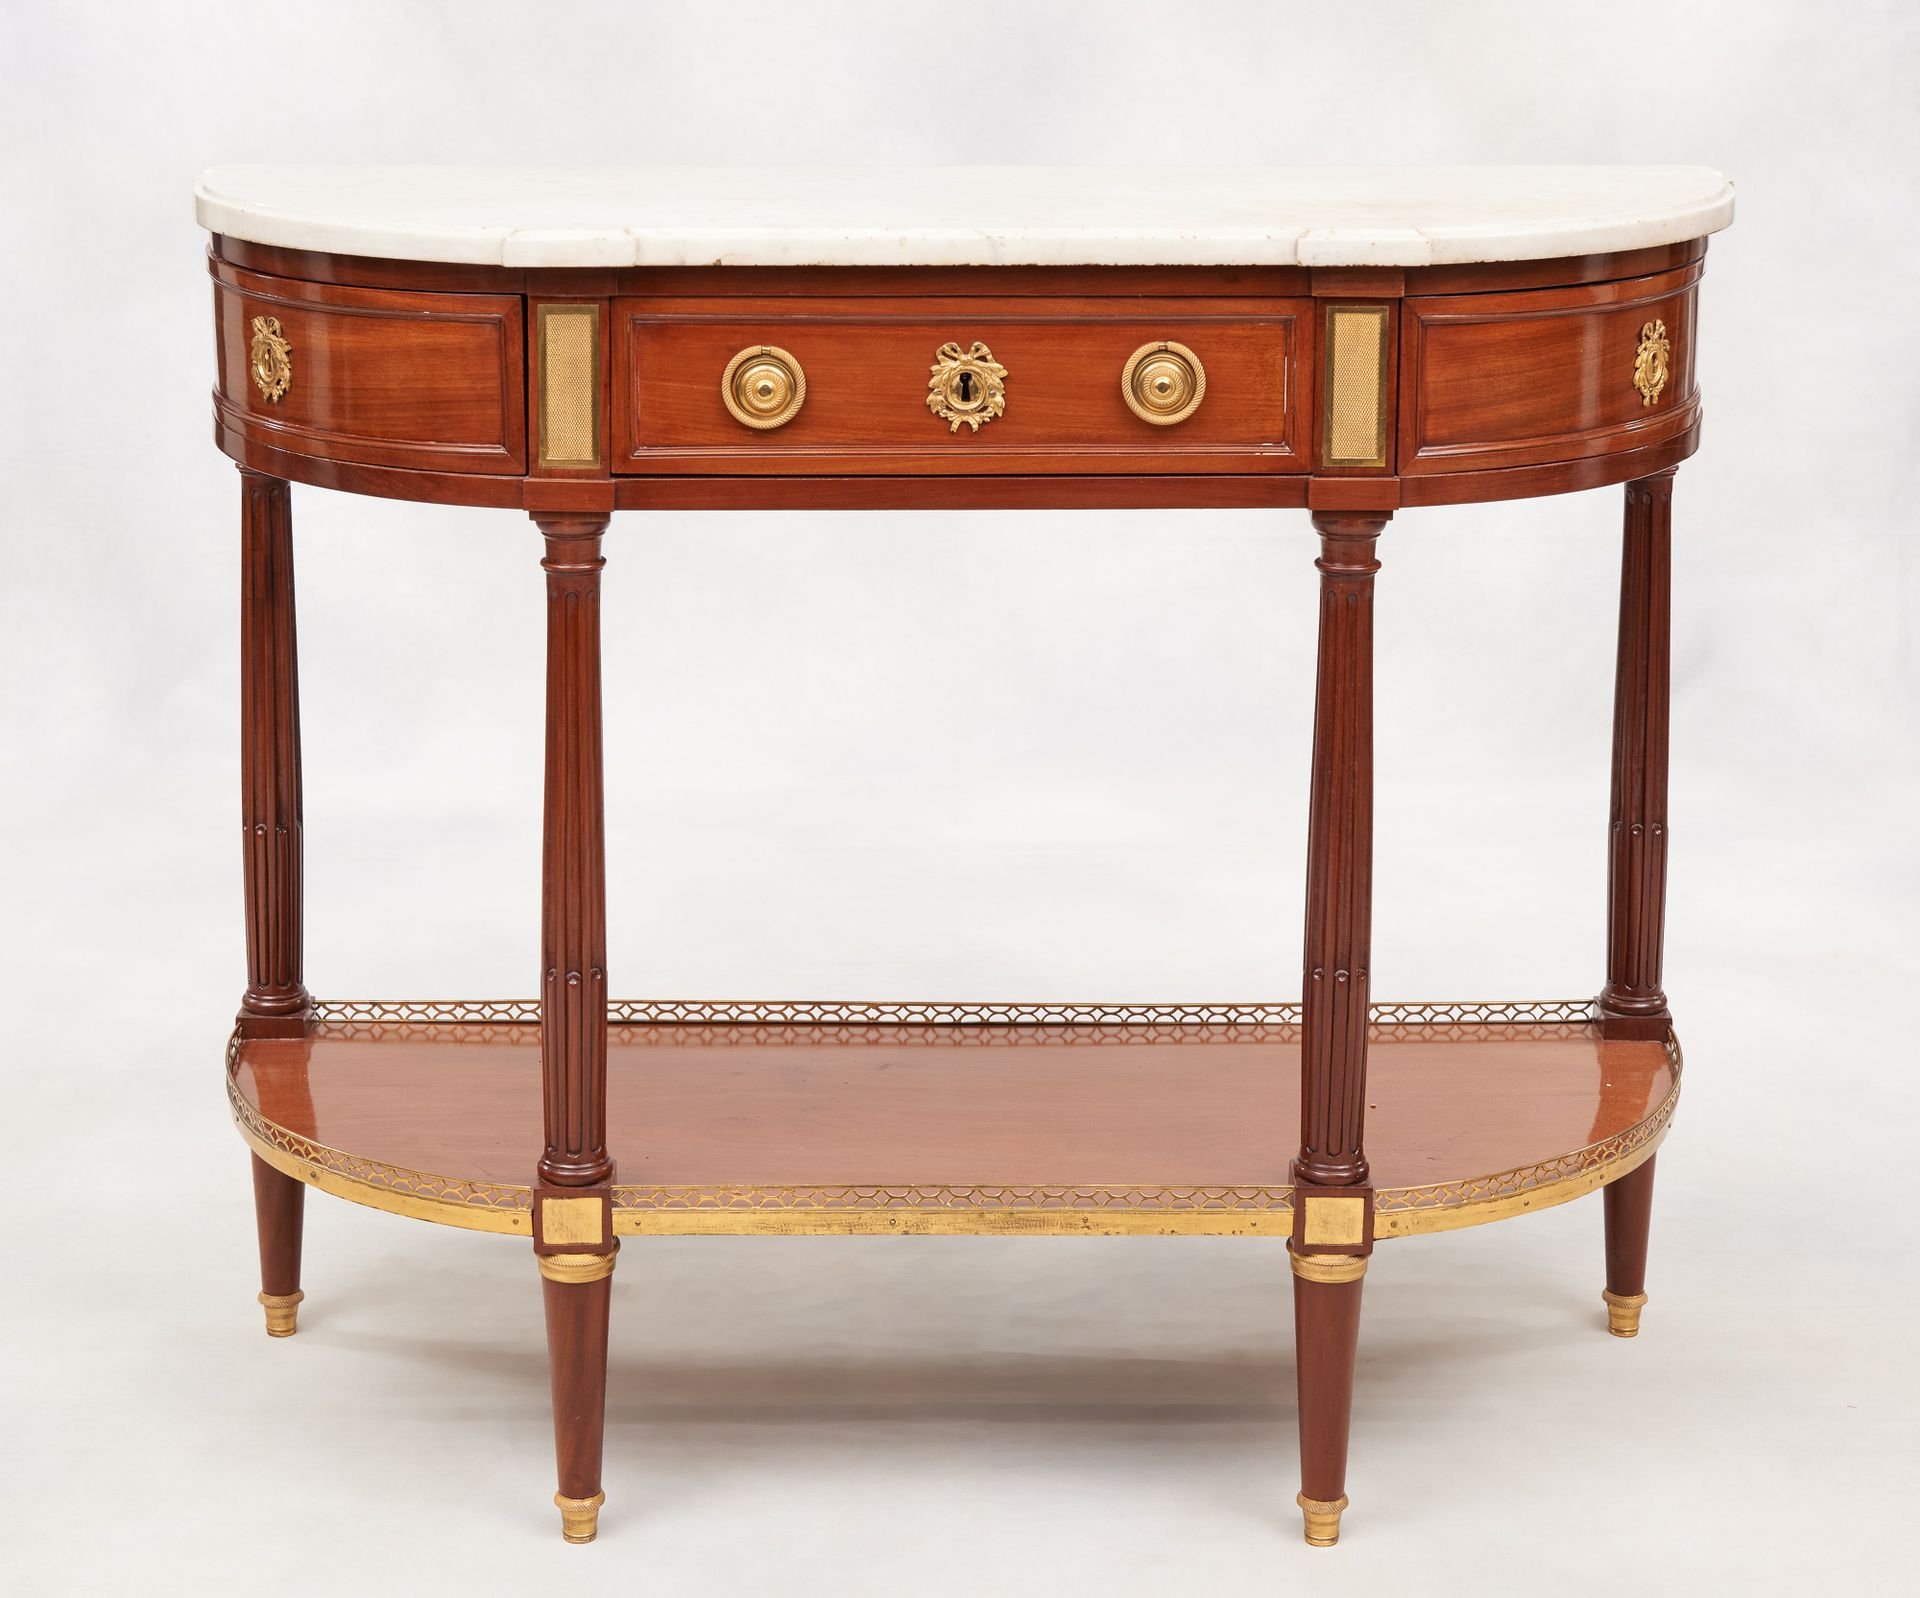 D'époque Louis XVI. Möbel: Halbmondförmige Konsole aus Mahagoni mit einer Schubl&hellip;